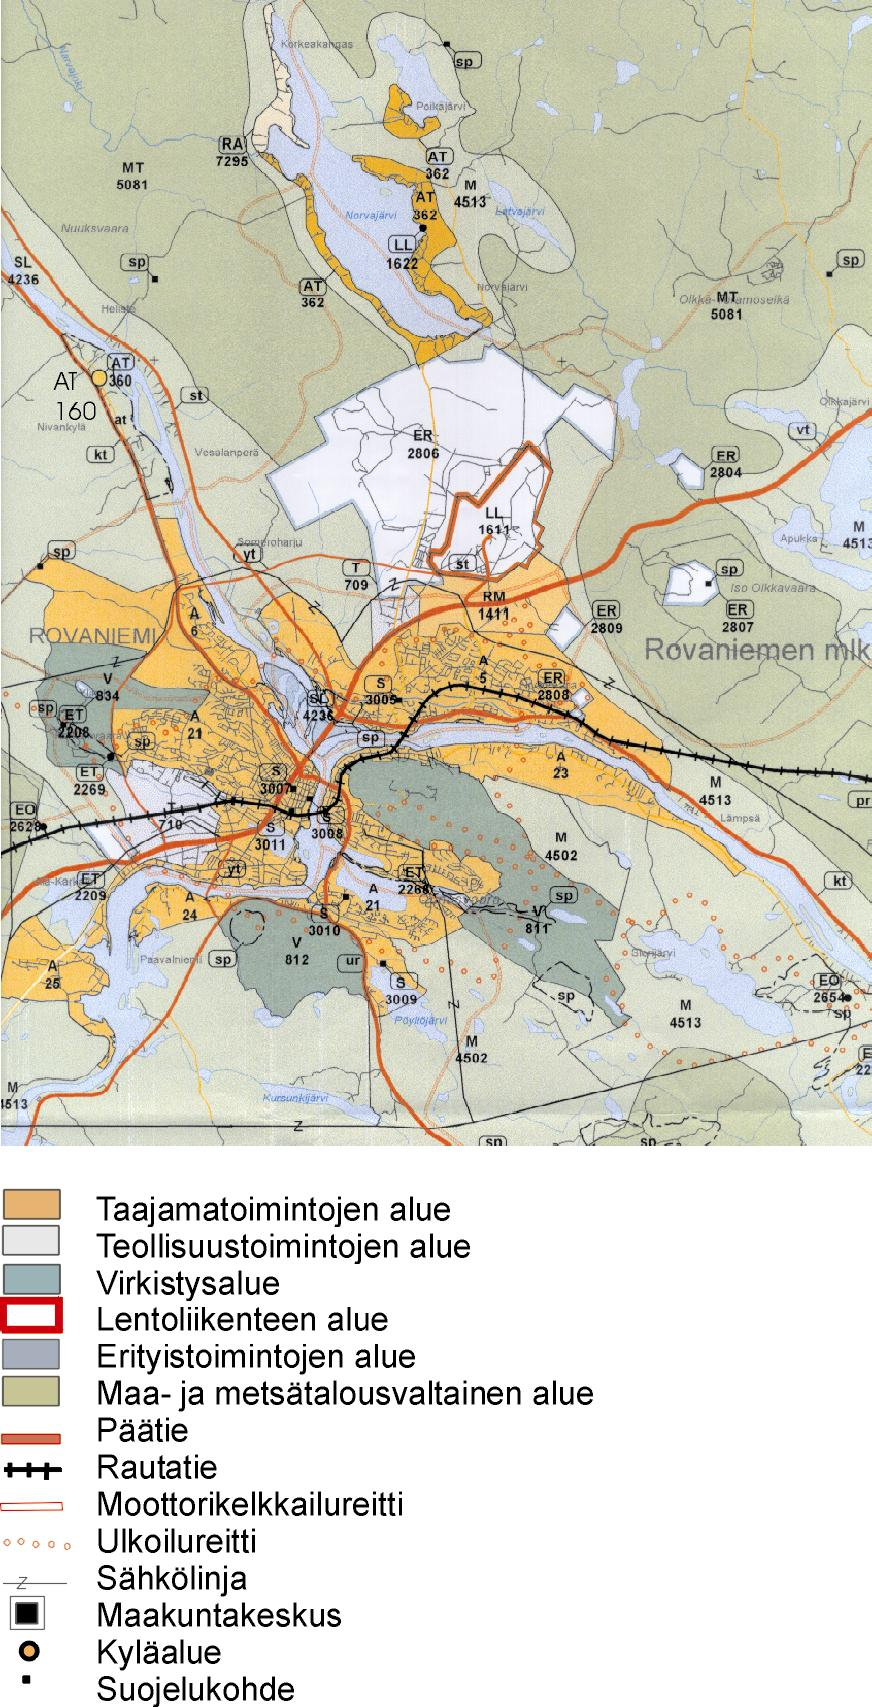 2 Suunnittelun lähtökohdat Maakuntakaava ja vireillä oleva vaihemaakuntakaava Ympäristöministeriö on vahvistanut Rovaniemen seudun maakuntakaavan 2.11.2001.